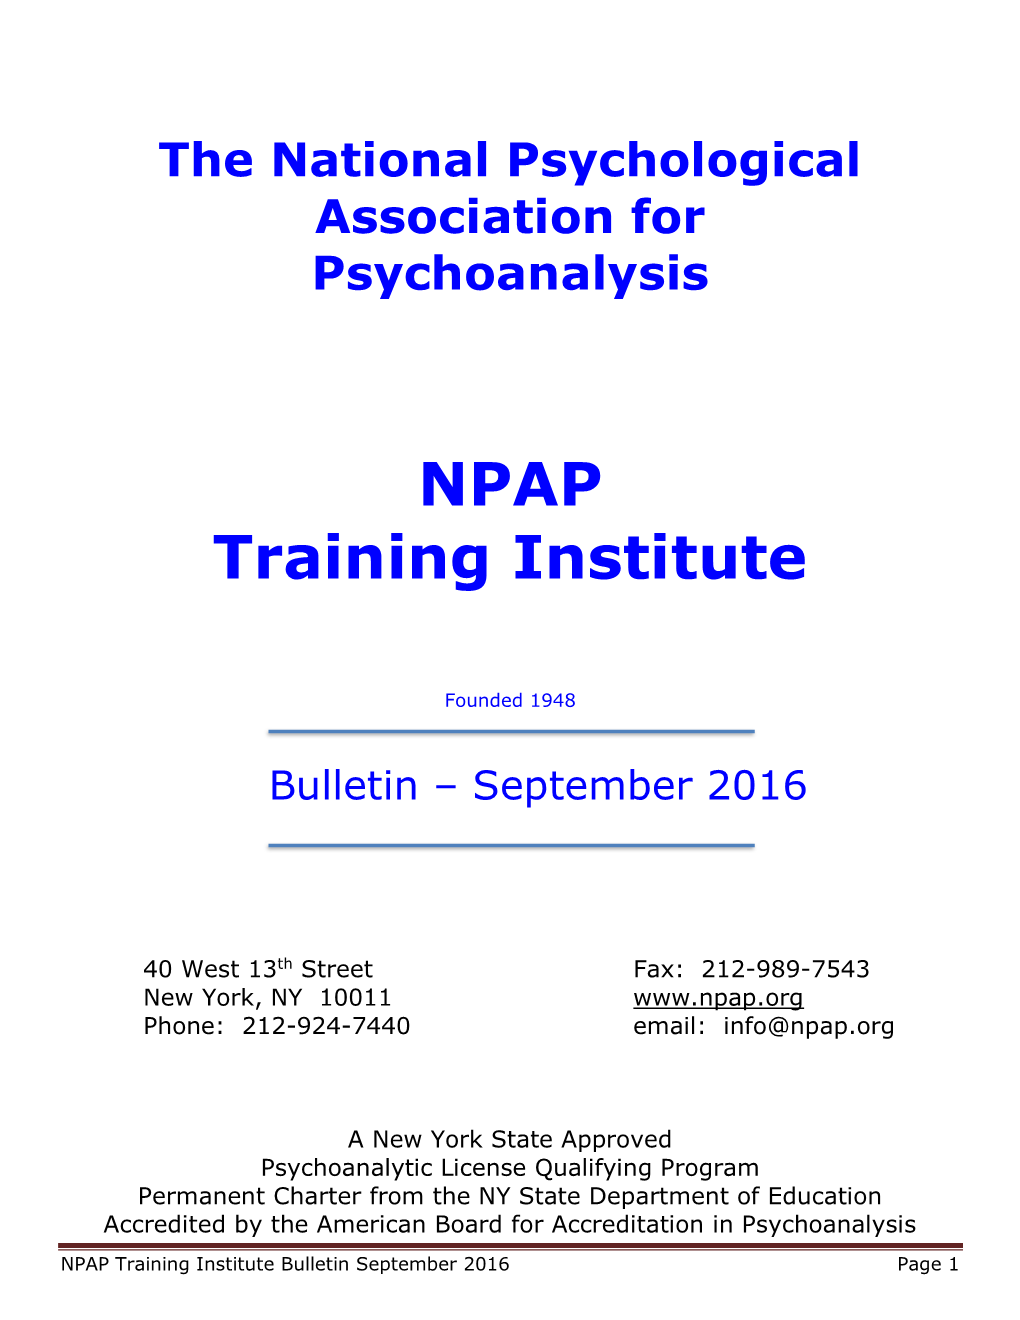 NPAP Training Institute